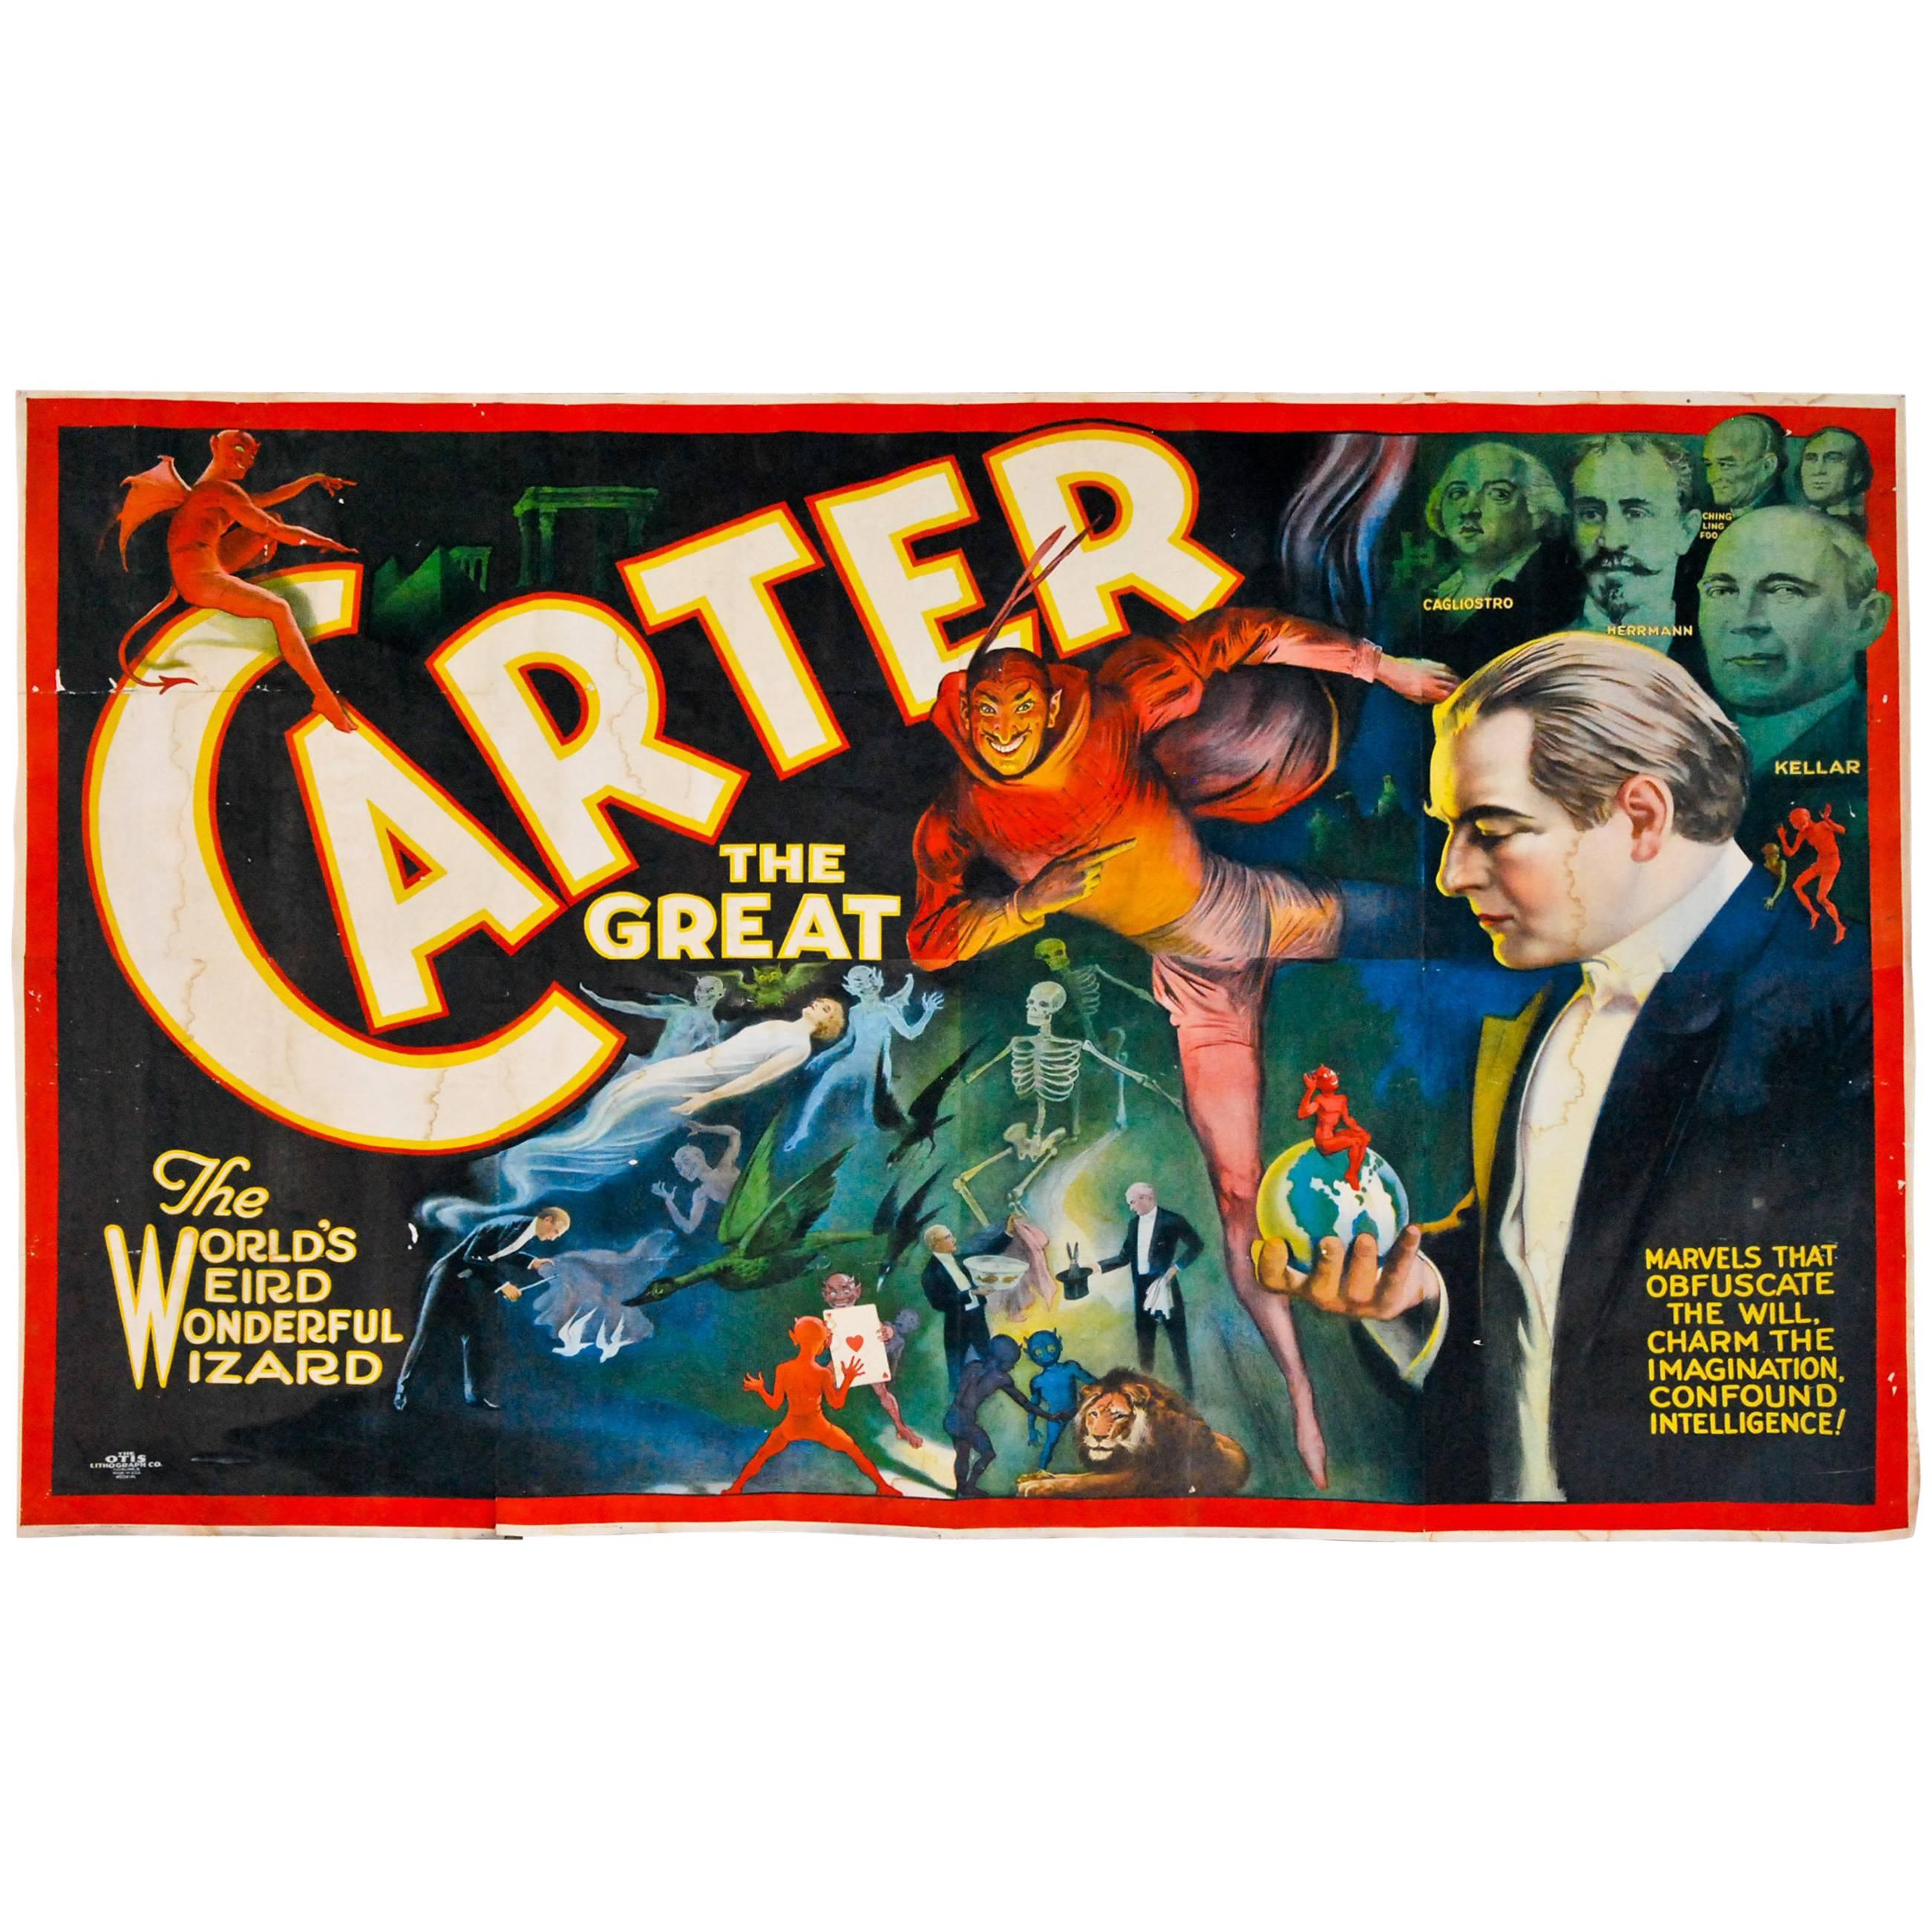 1915 Carter der Große Banner von Otis Lithograph, Cleveland